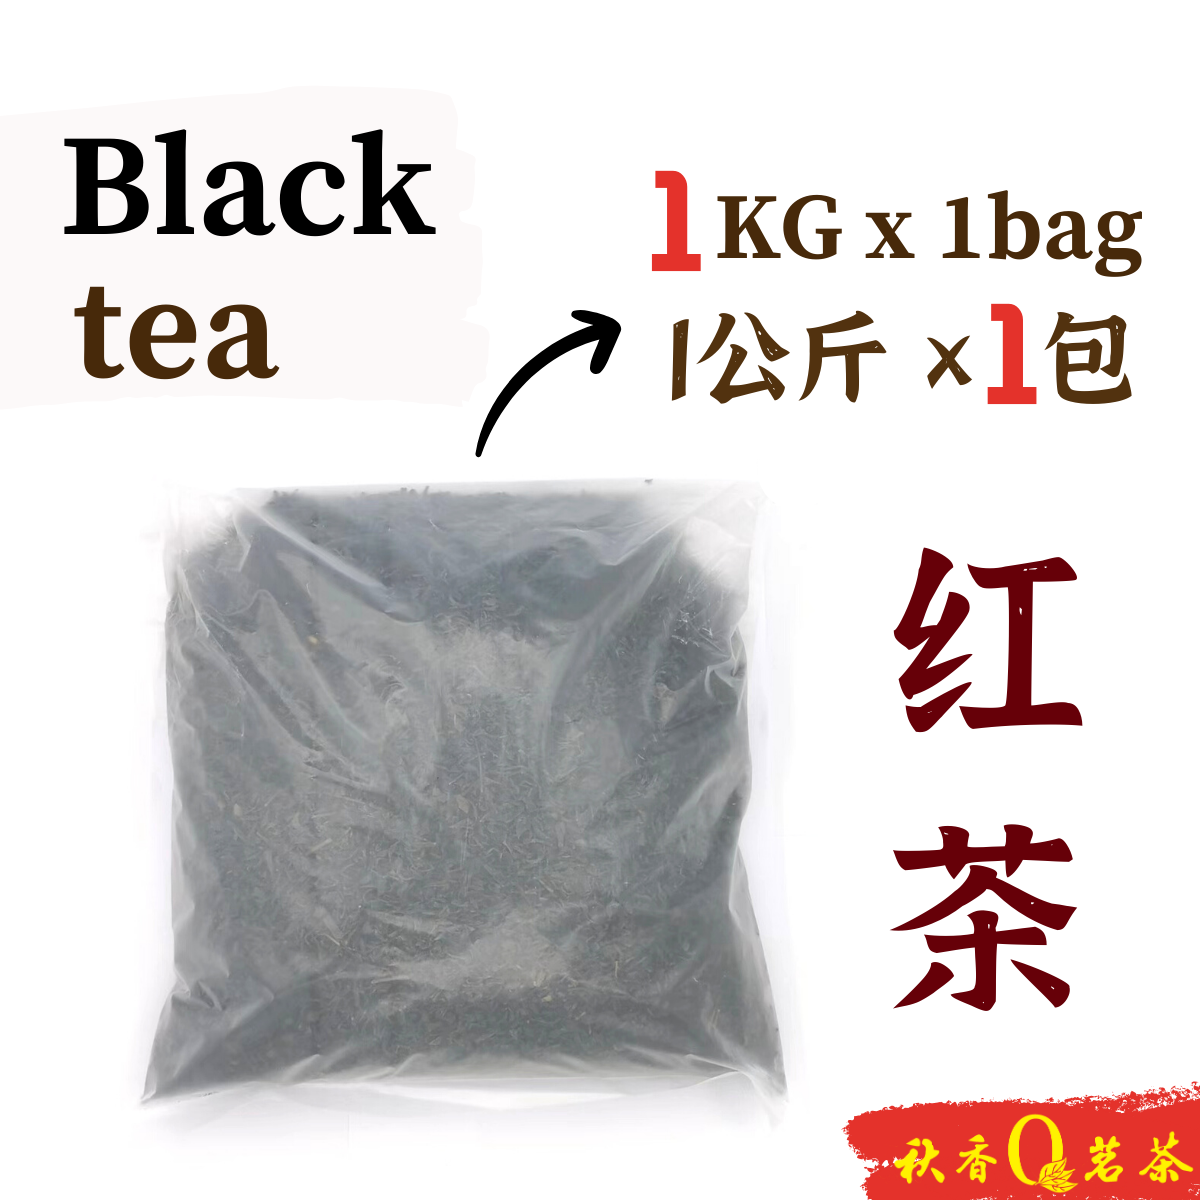 红茶 Black tea【1kg】